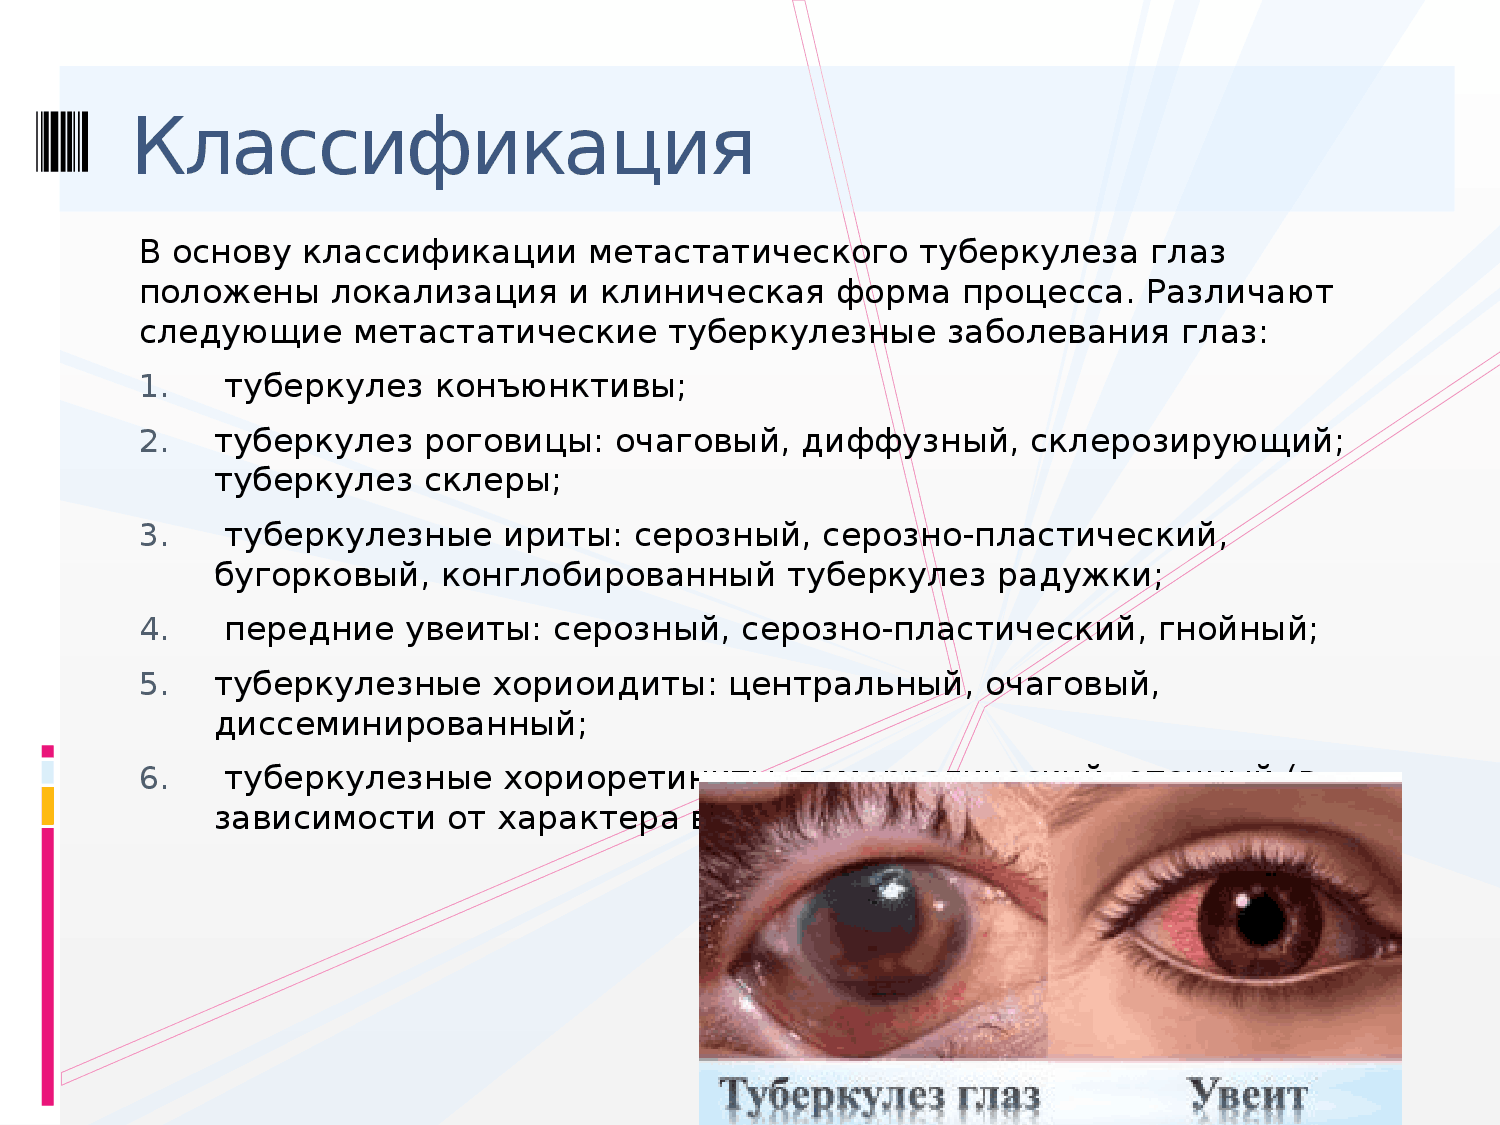 Признаки глазков